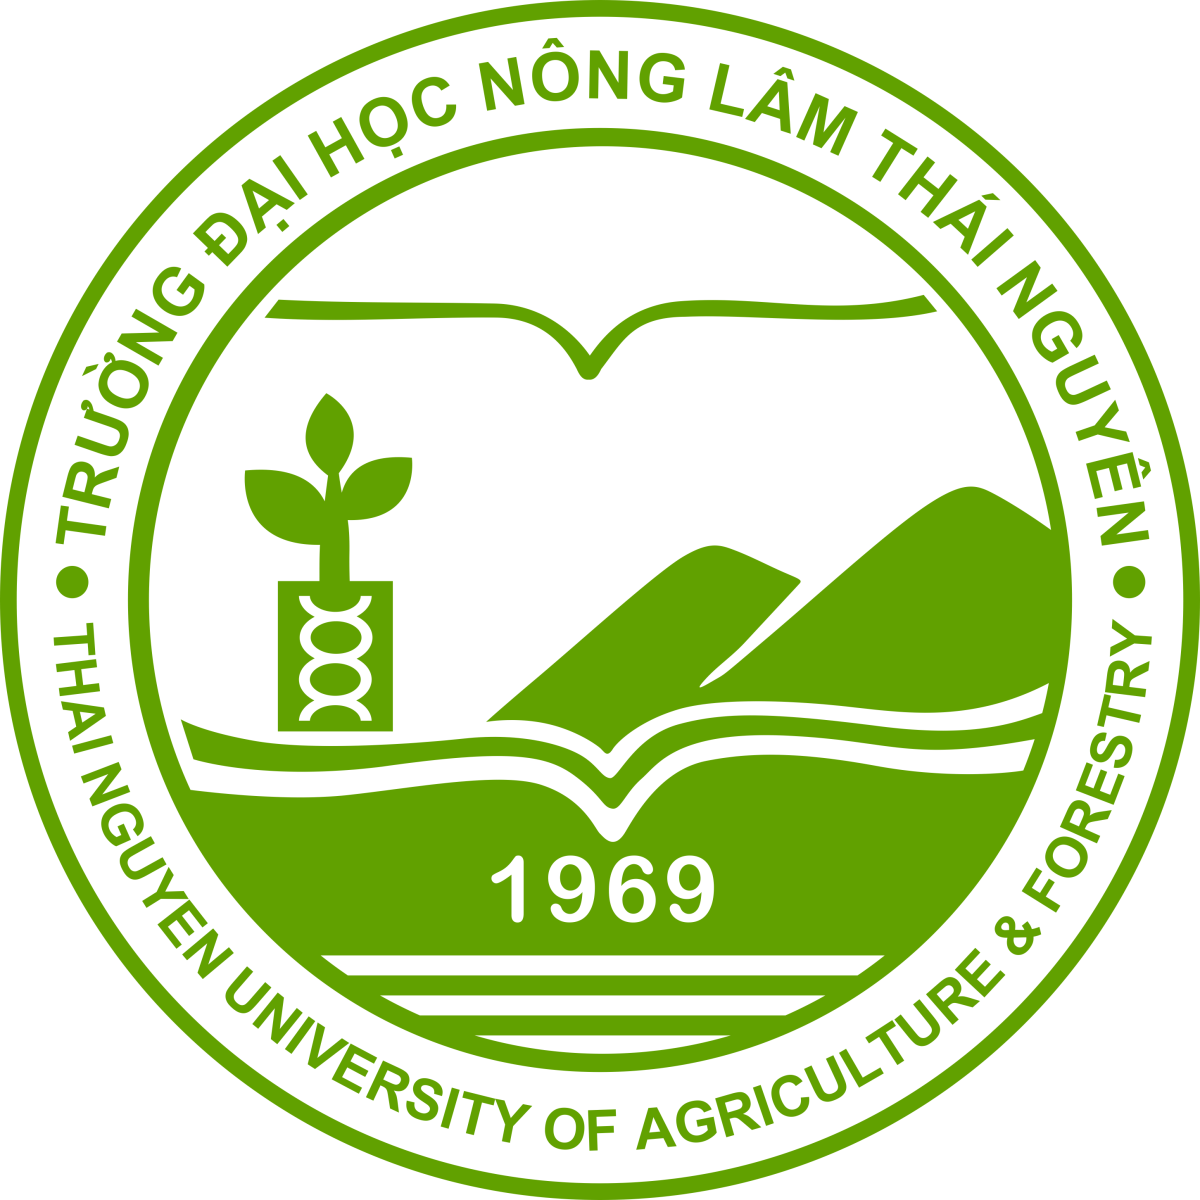 Logo đăng ký hệ đại học từ xa đại học trực tuyến đại học nông lâm thái nguyên